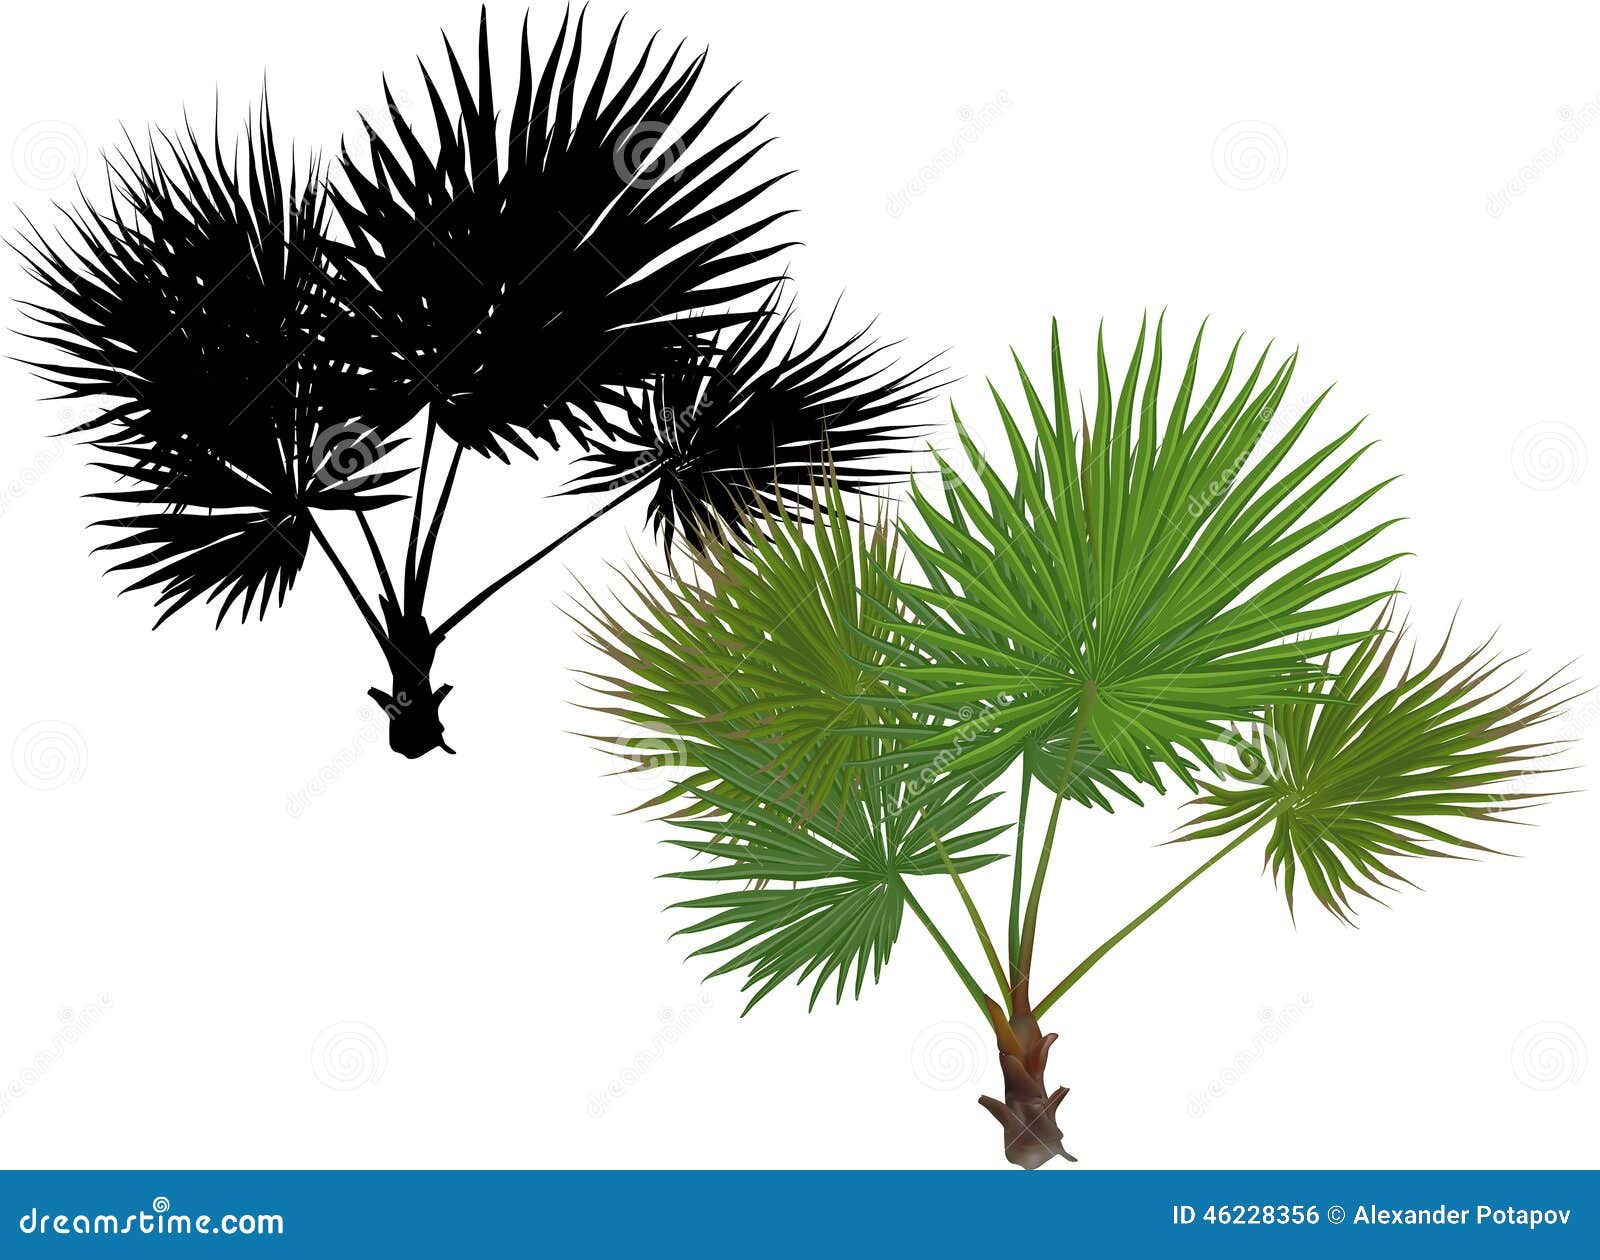 la palmera rey. ** elegante elfenbeinfarbener raíz y jugosa hojas verdes